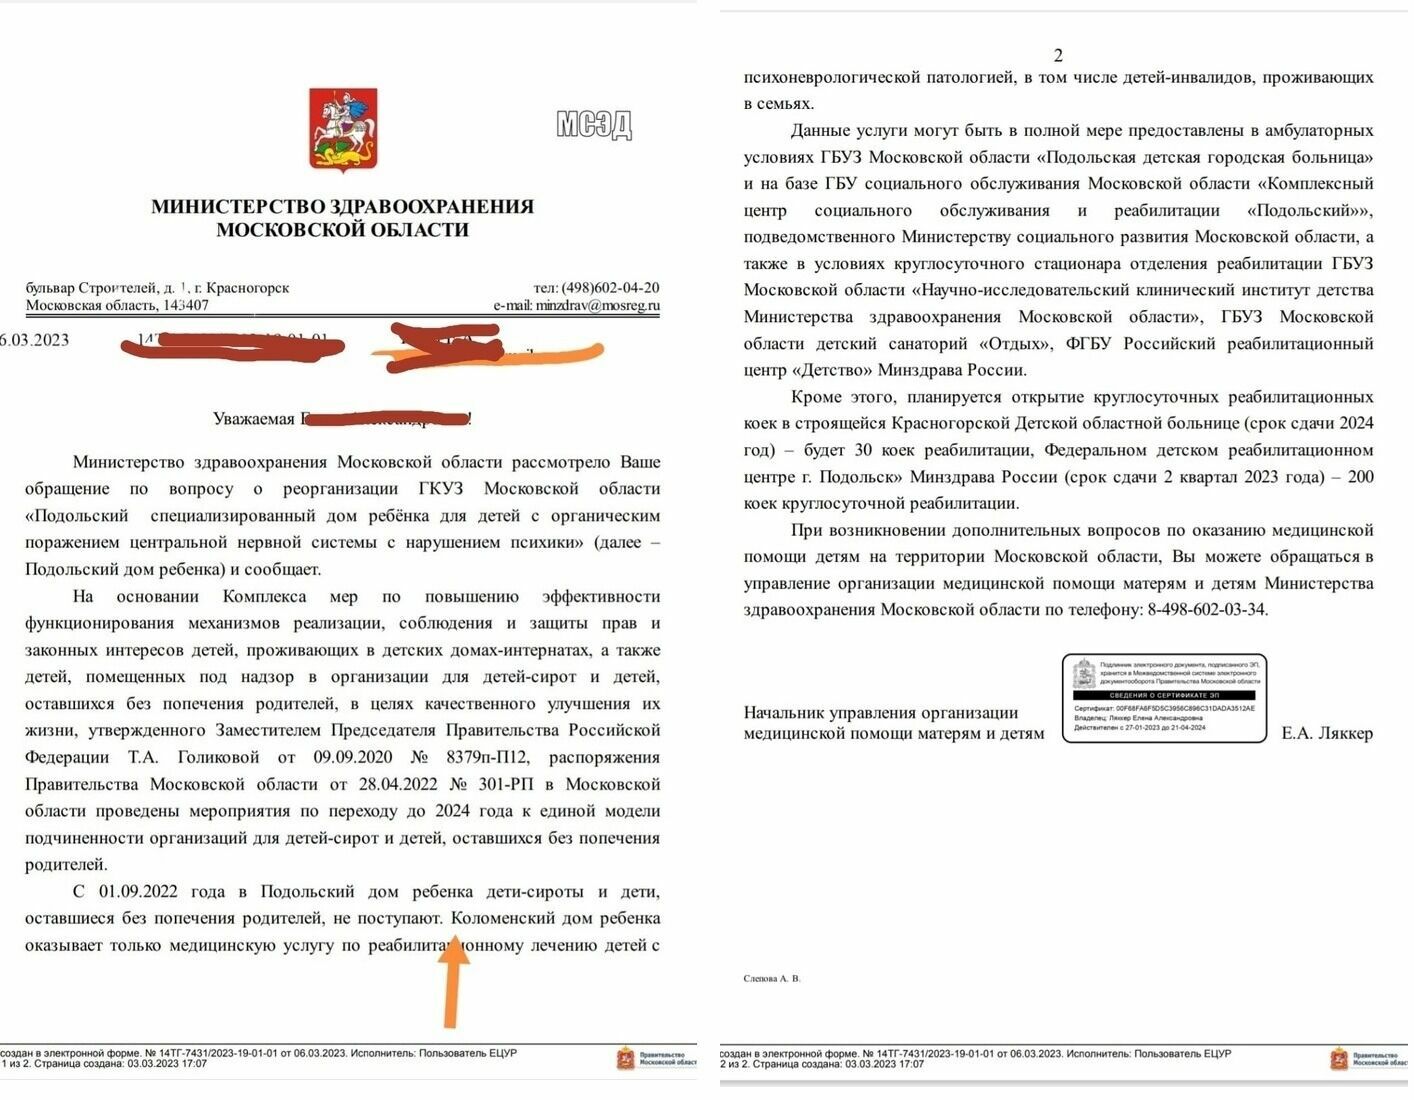 Ответ Министерства здравоохранения Московской области